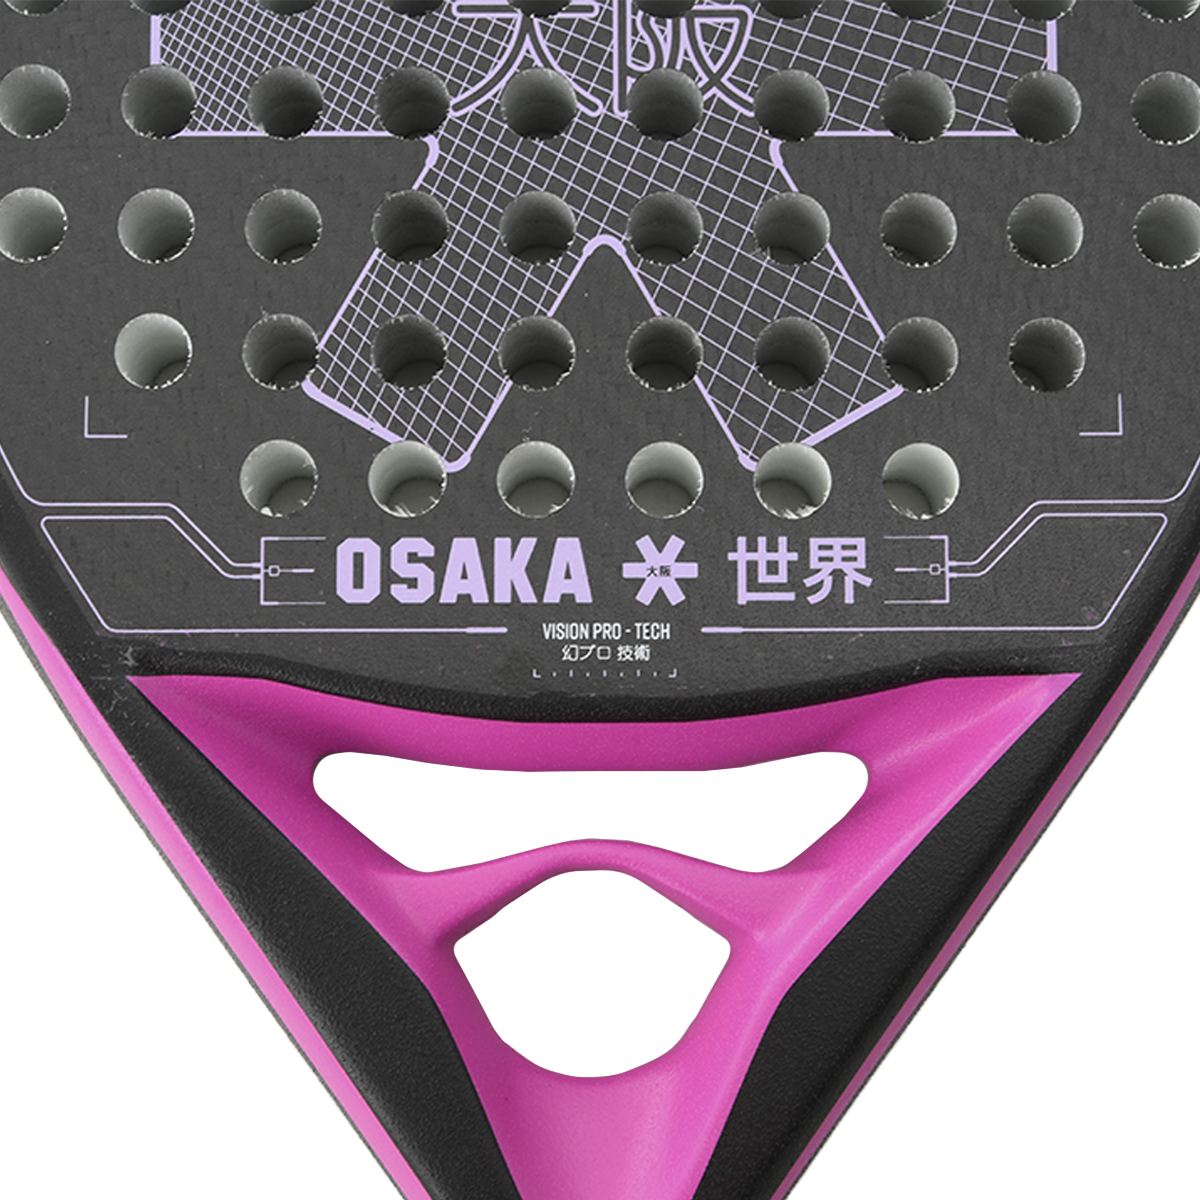 Paleta Osaka Control-iconic,  image number null